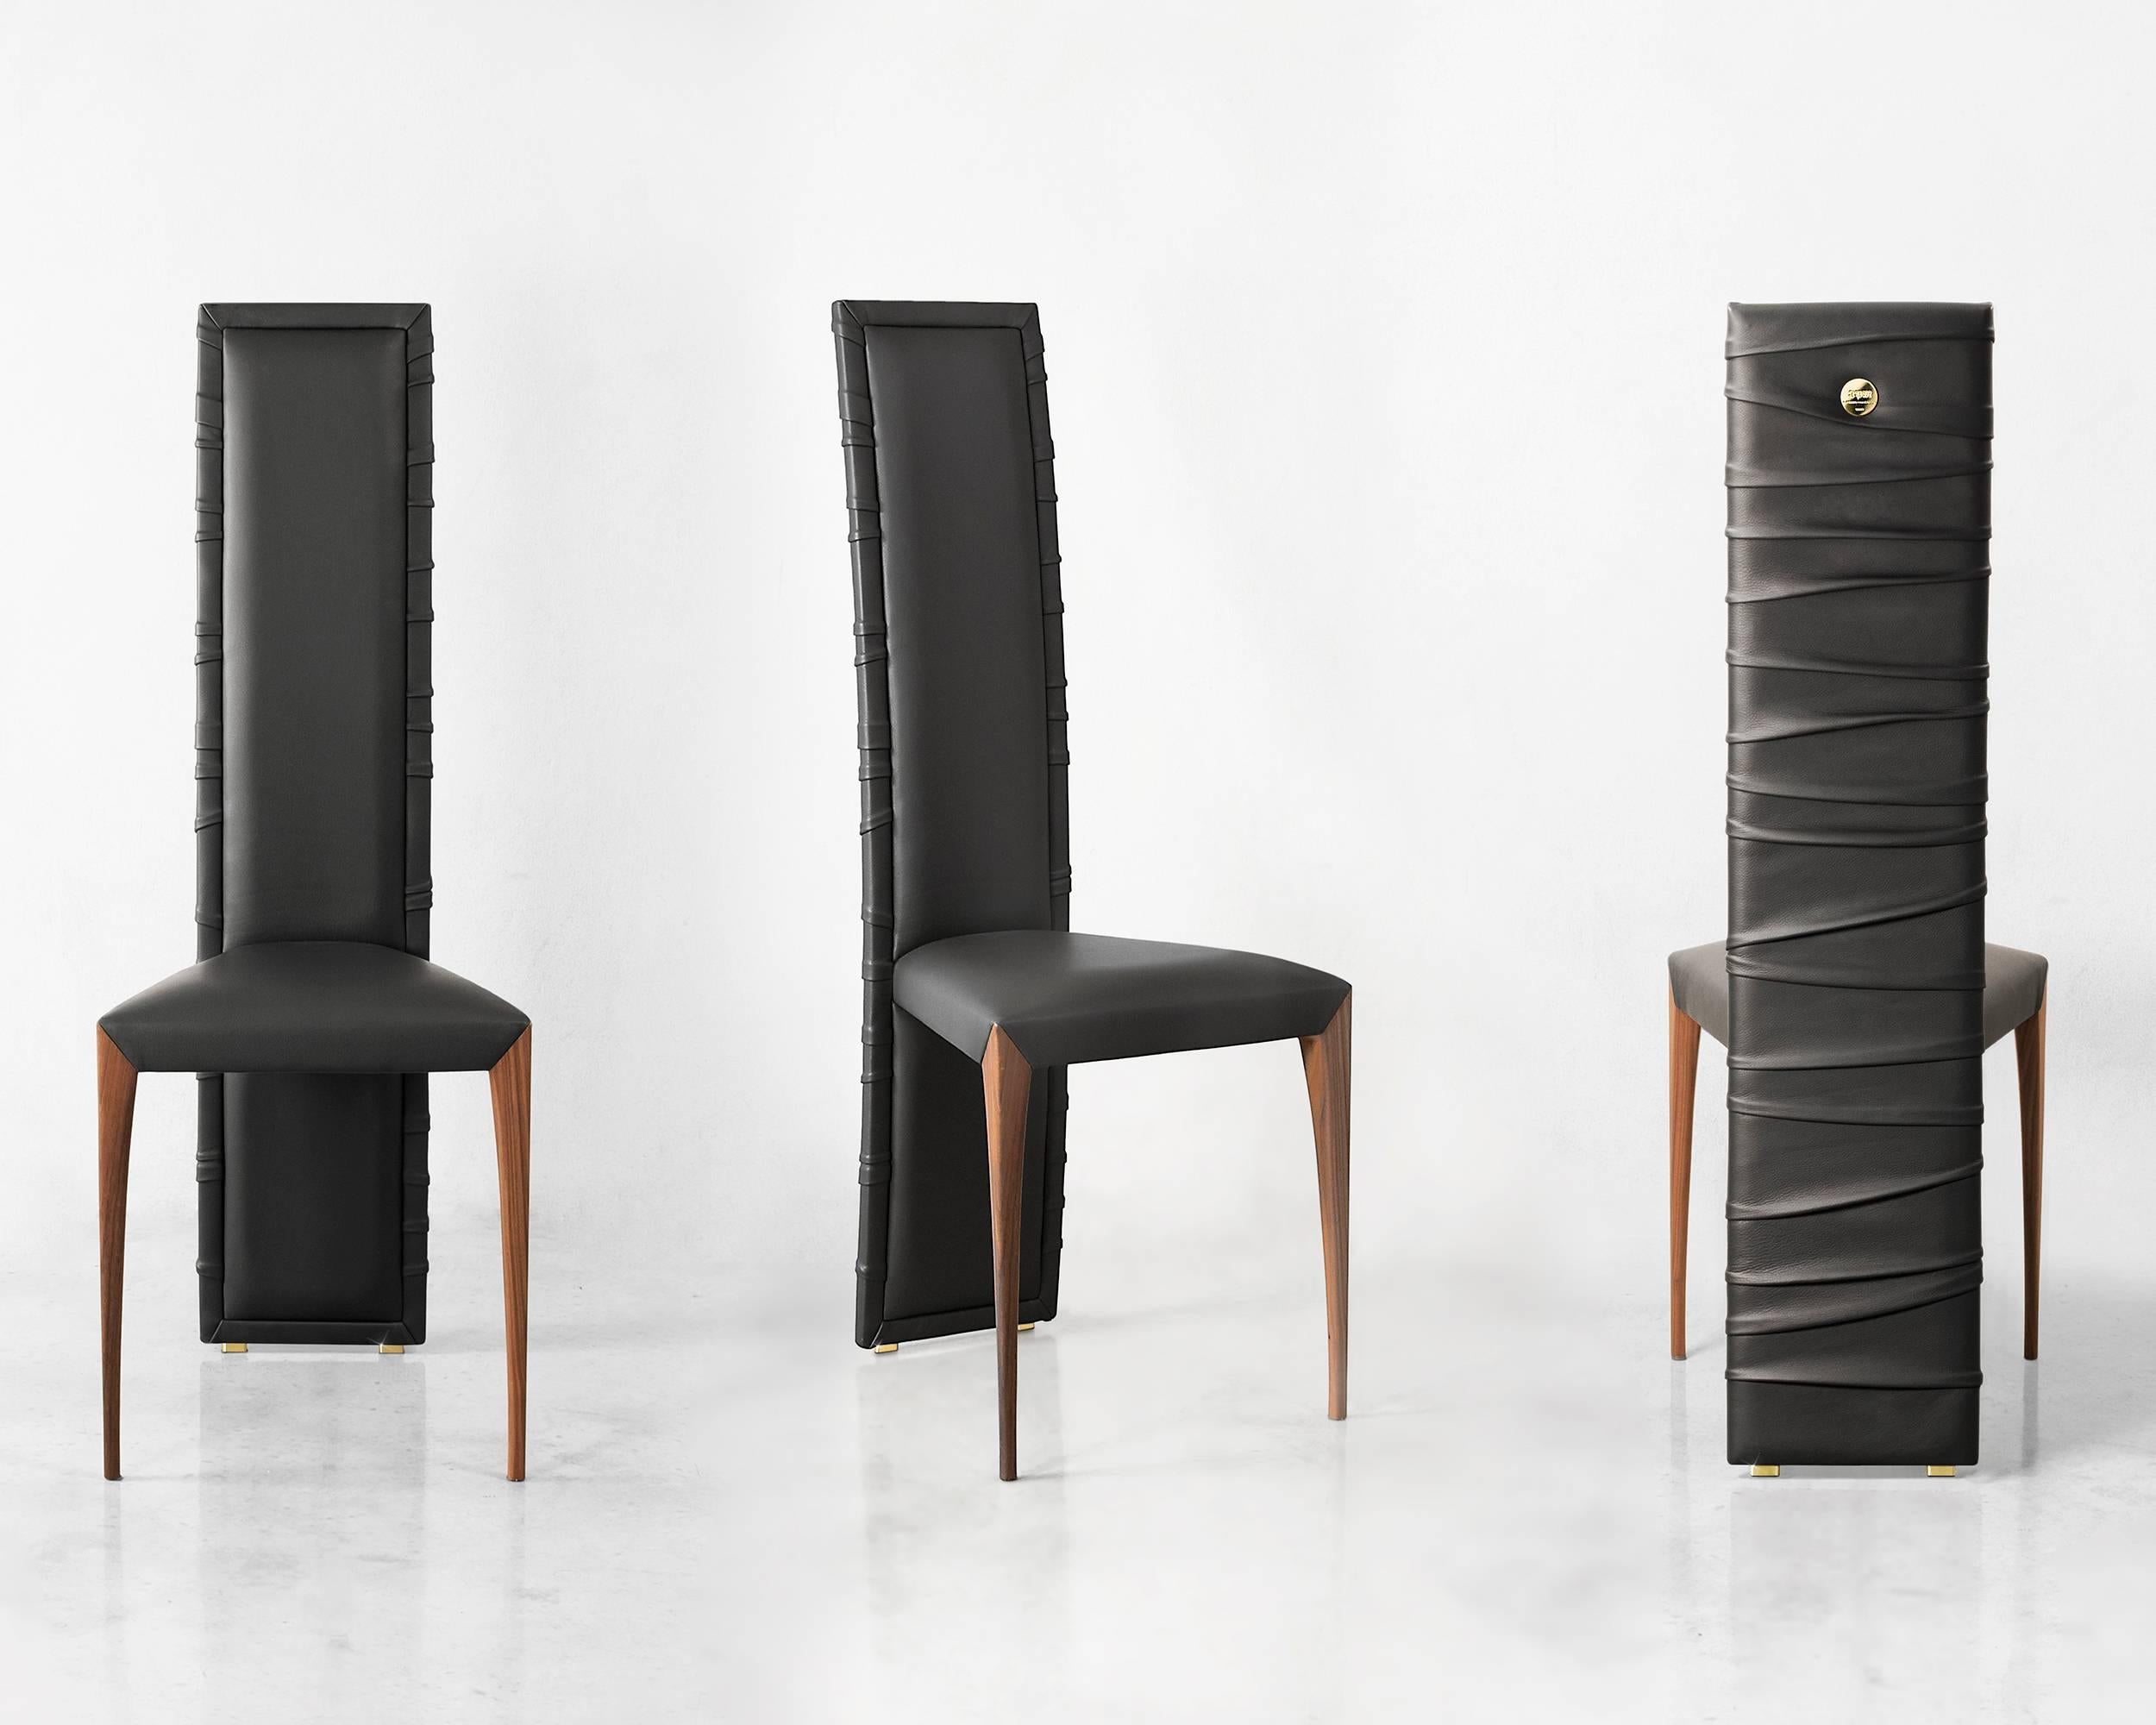 Des plis sinueux enveloppent la structure élégante de la chaise Eleg Pezzo 7. Habillé de cuir ou de velours de haute qualité par des maîtres artisans, il est doté d'un dossier riche et moelleux, enveloppé dans ses plis gracieux. L'assise est dotée